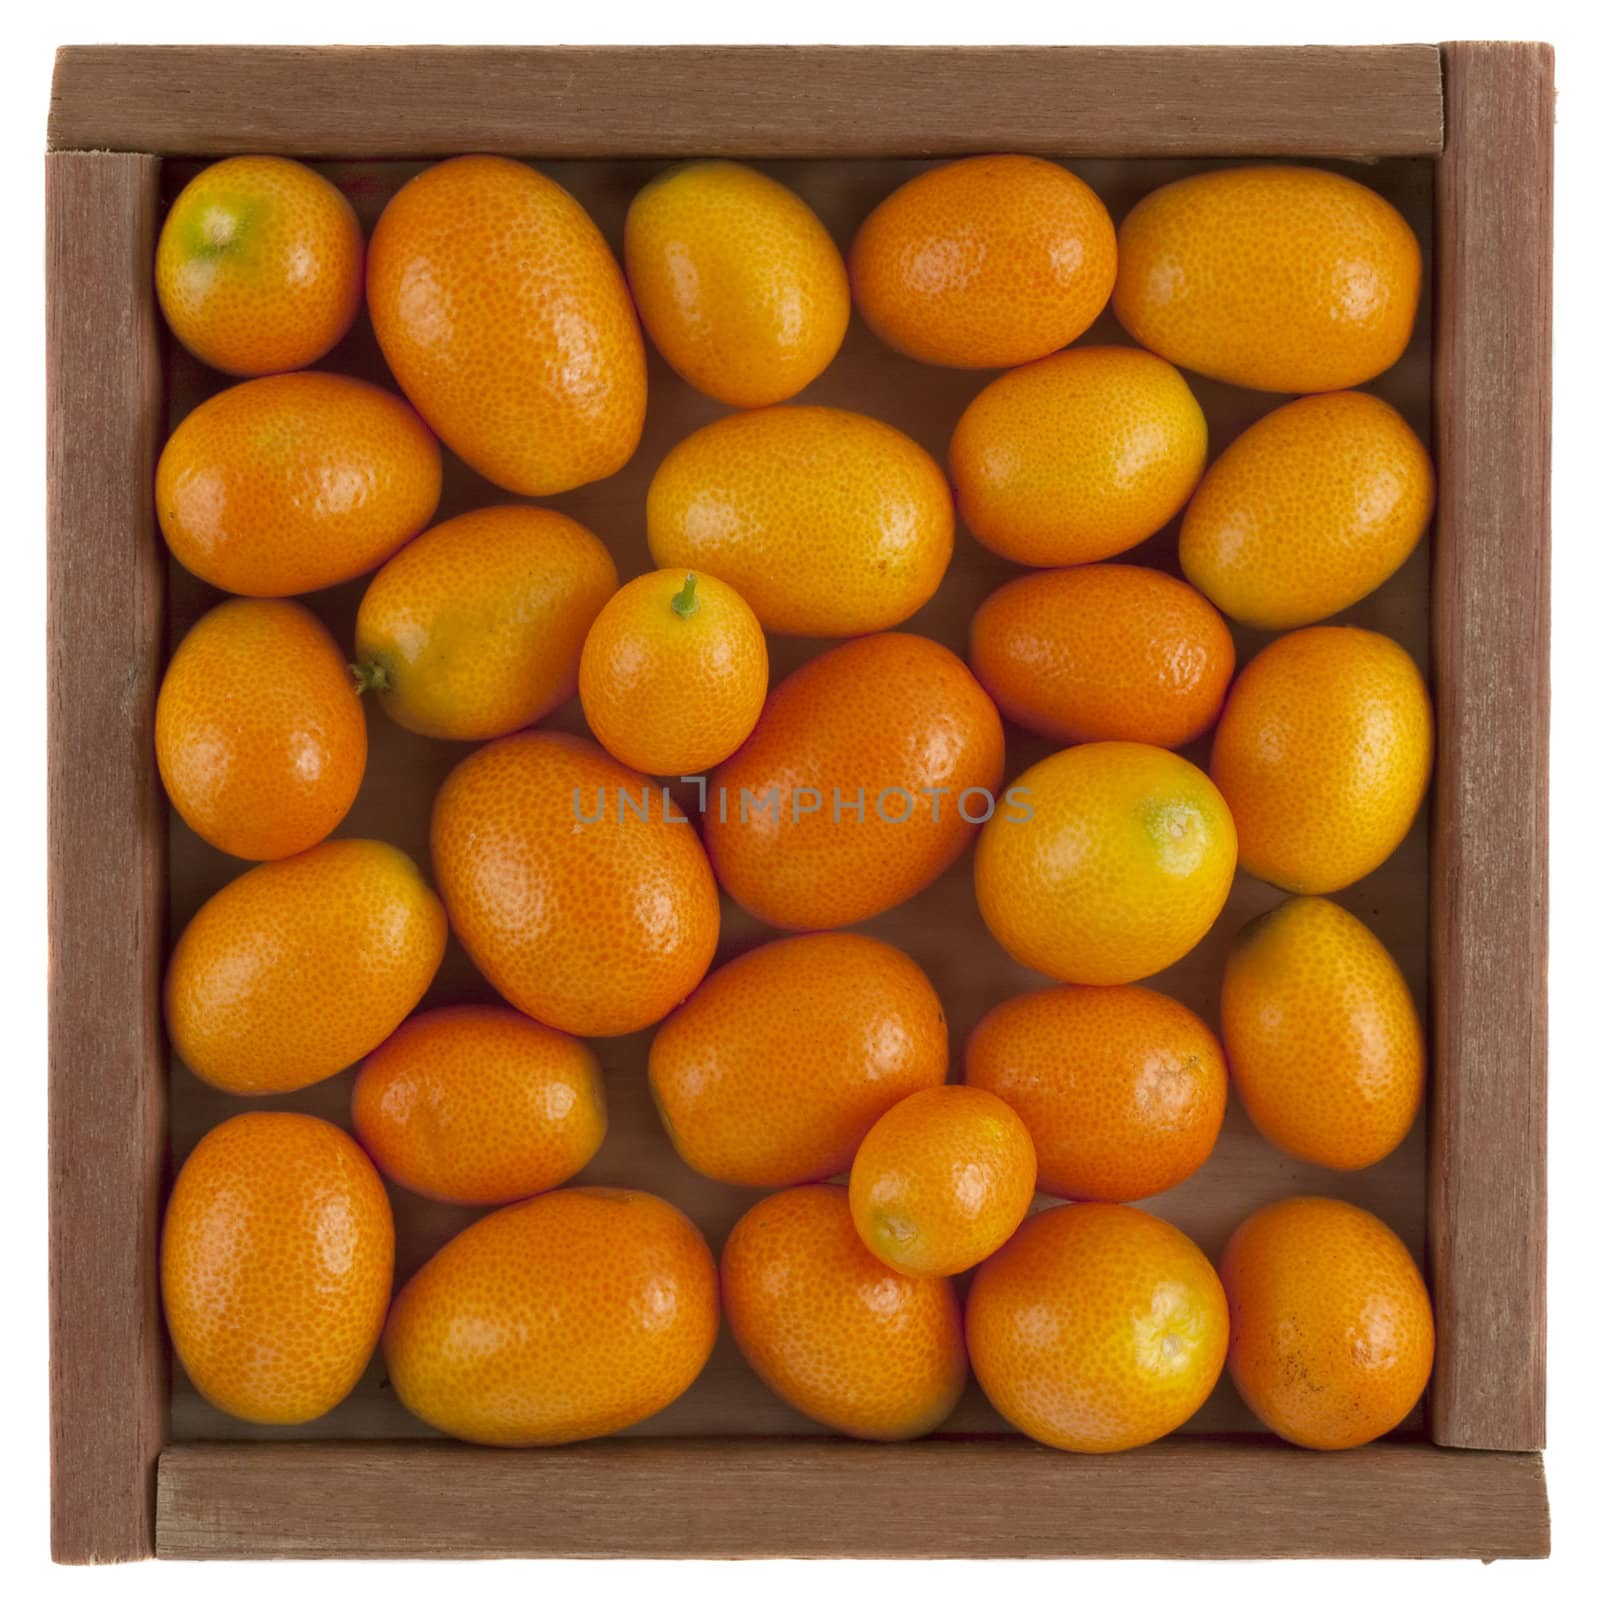 kumquats in a rustic, wooden box by PixelsAway